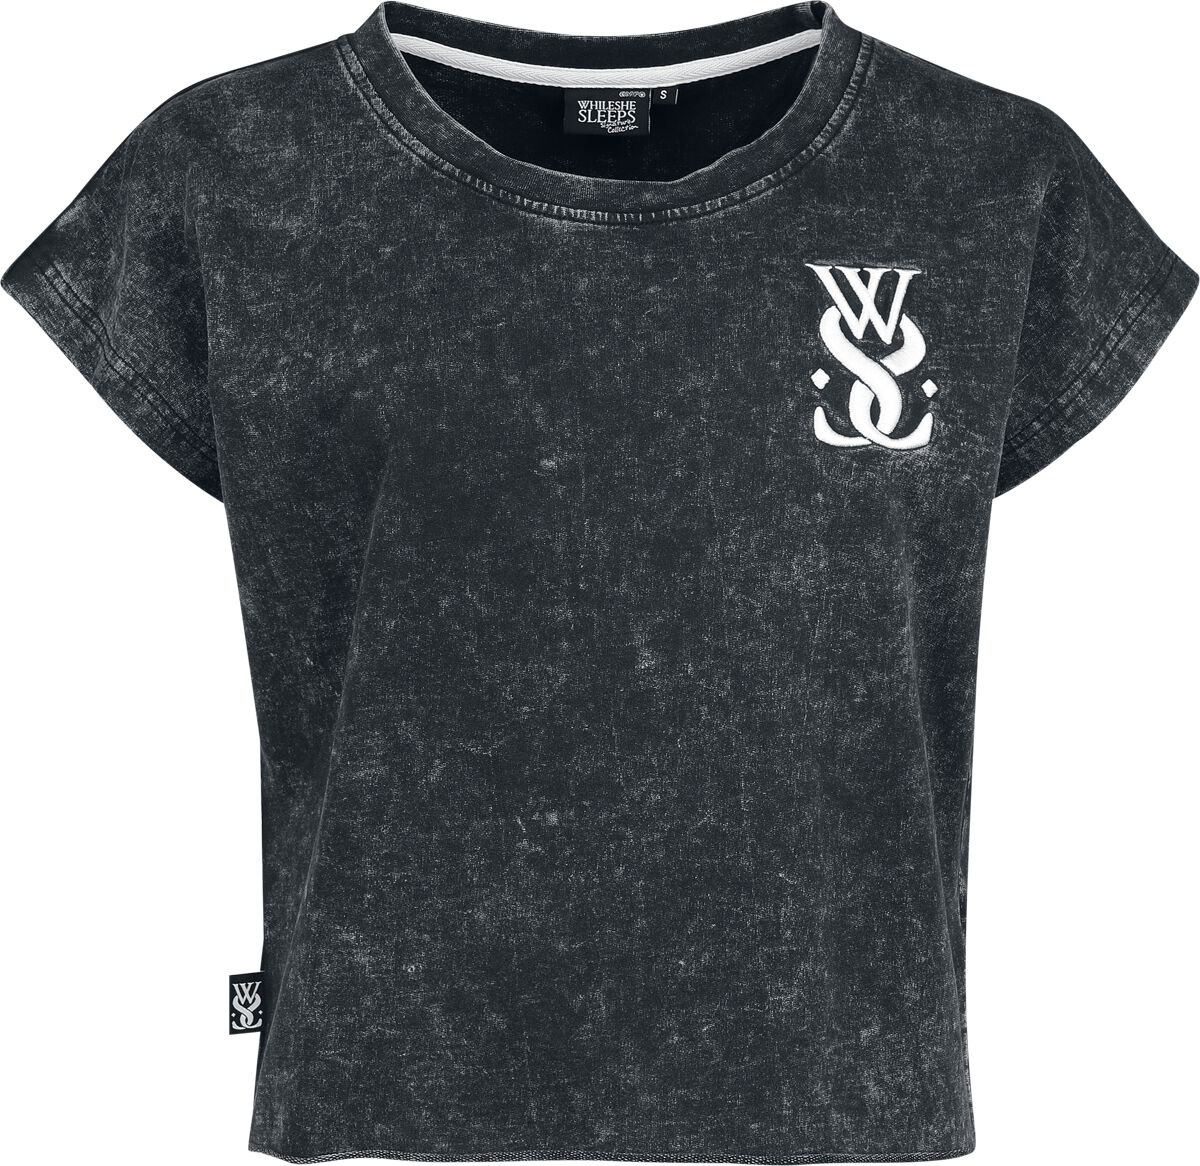 While She Sleeps T-Shirt - EMP Signature Collection - XS bis 3XL - für Damen - Größe S - grau  - EMP exklusives Merchandise!